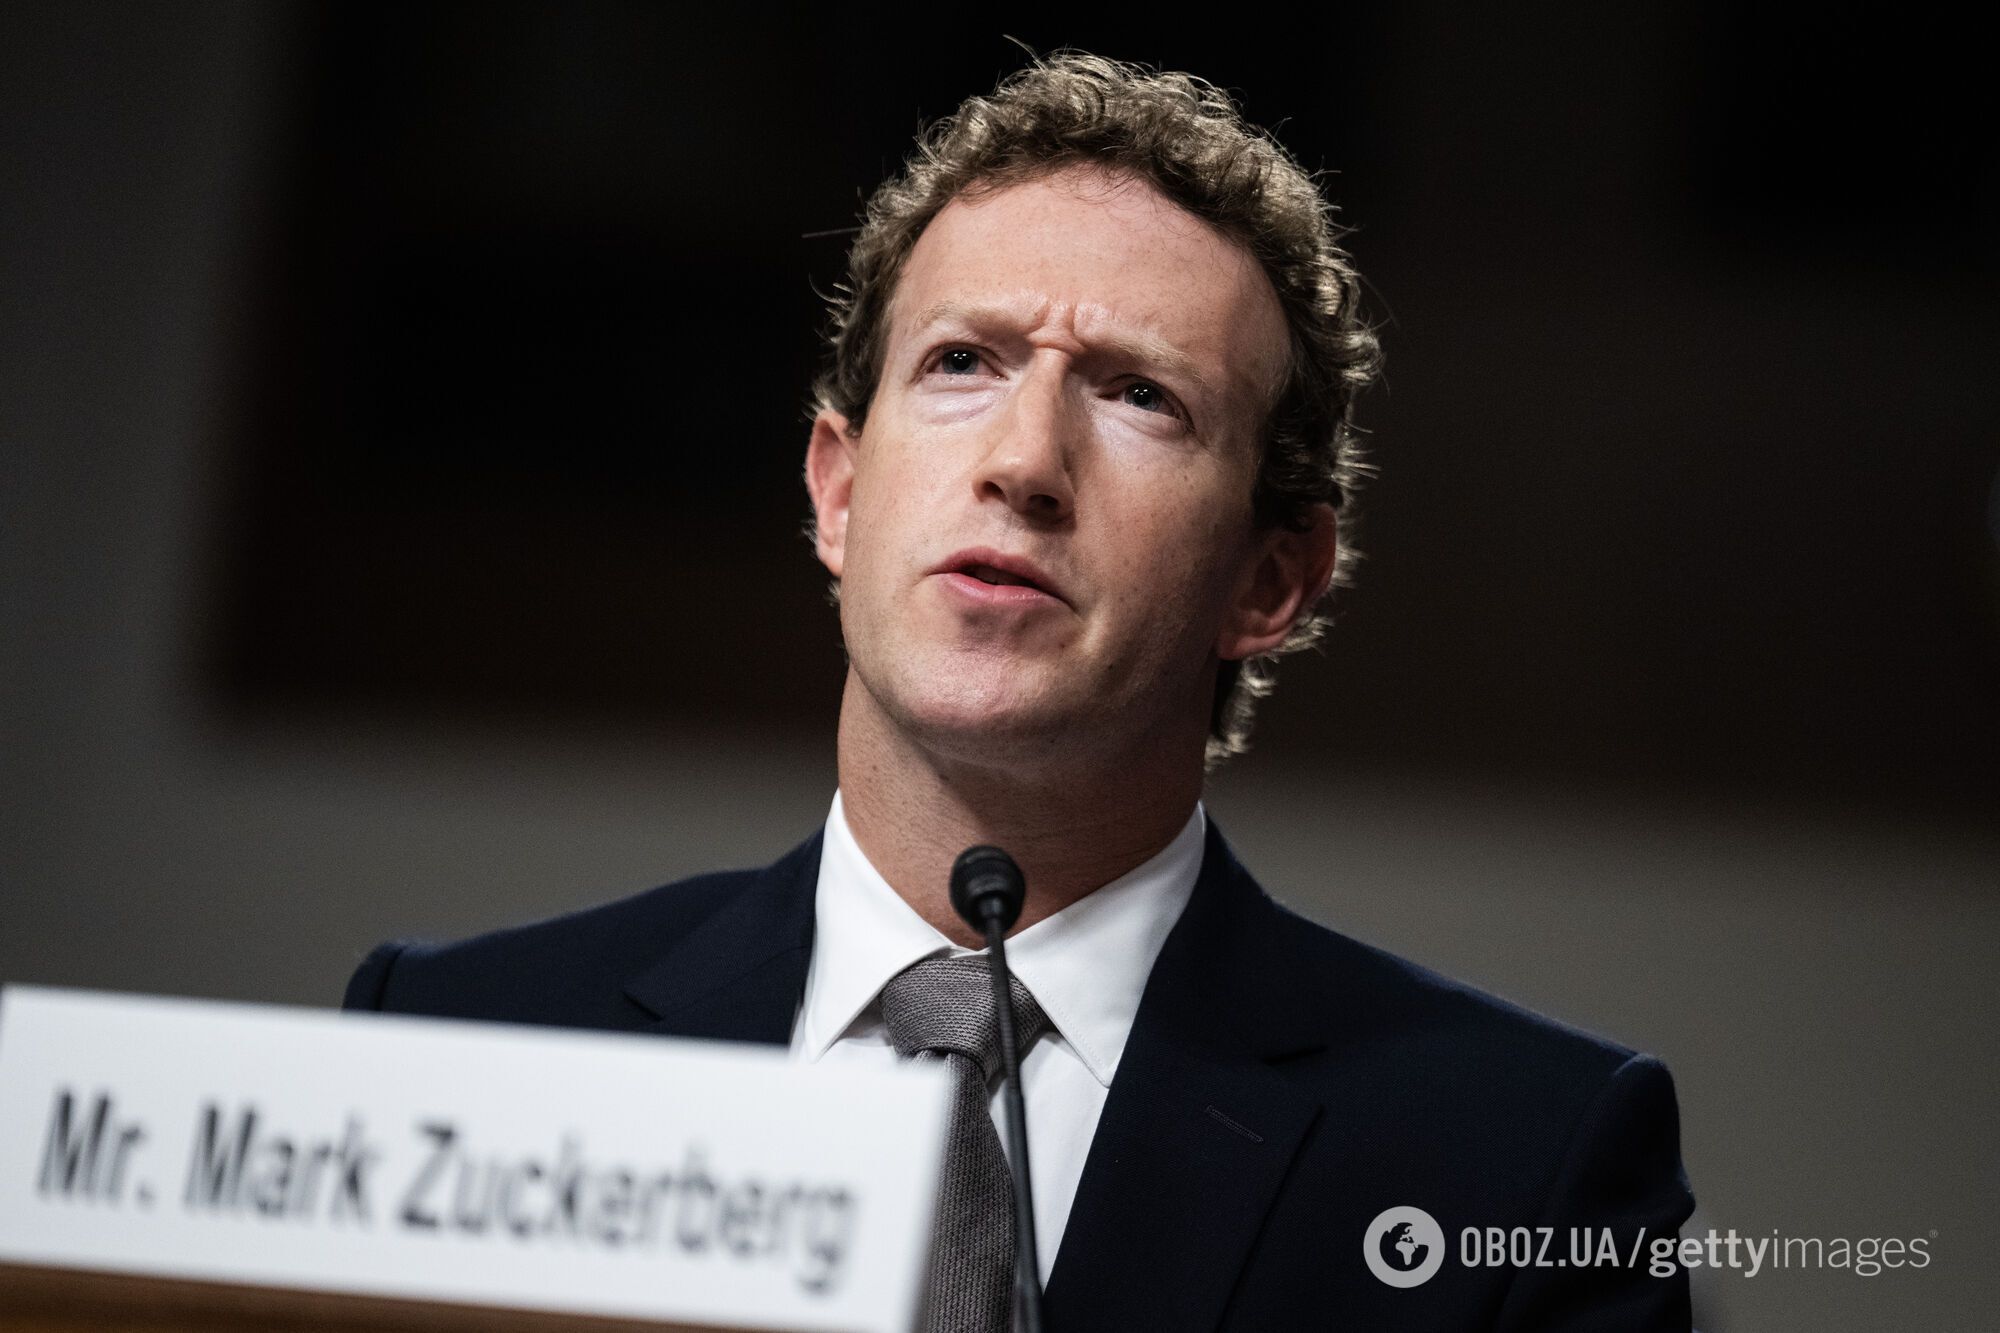 Марк Цукерберг зі стильною бородою викликав бурхливу реакцію в мережі: засновник Facebook і його дружина відреагували